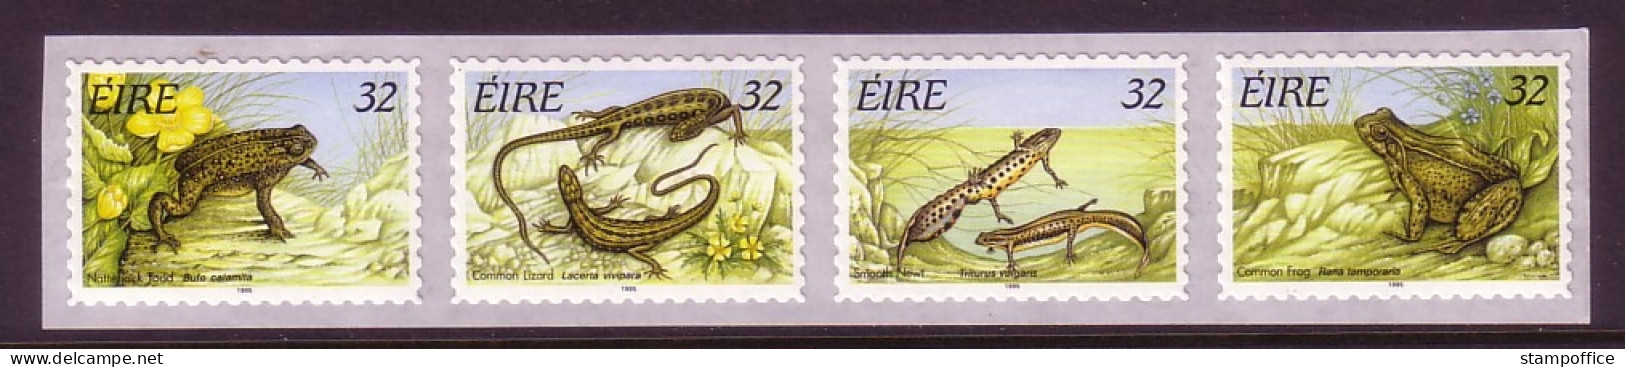 IRLAND MI-NR. 913-916 POSTFRISCH(MINT) REPTILIEN UND AMPHIBIEN 1995 FROSCH ECHSE MOLCH - Frogs